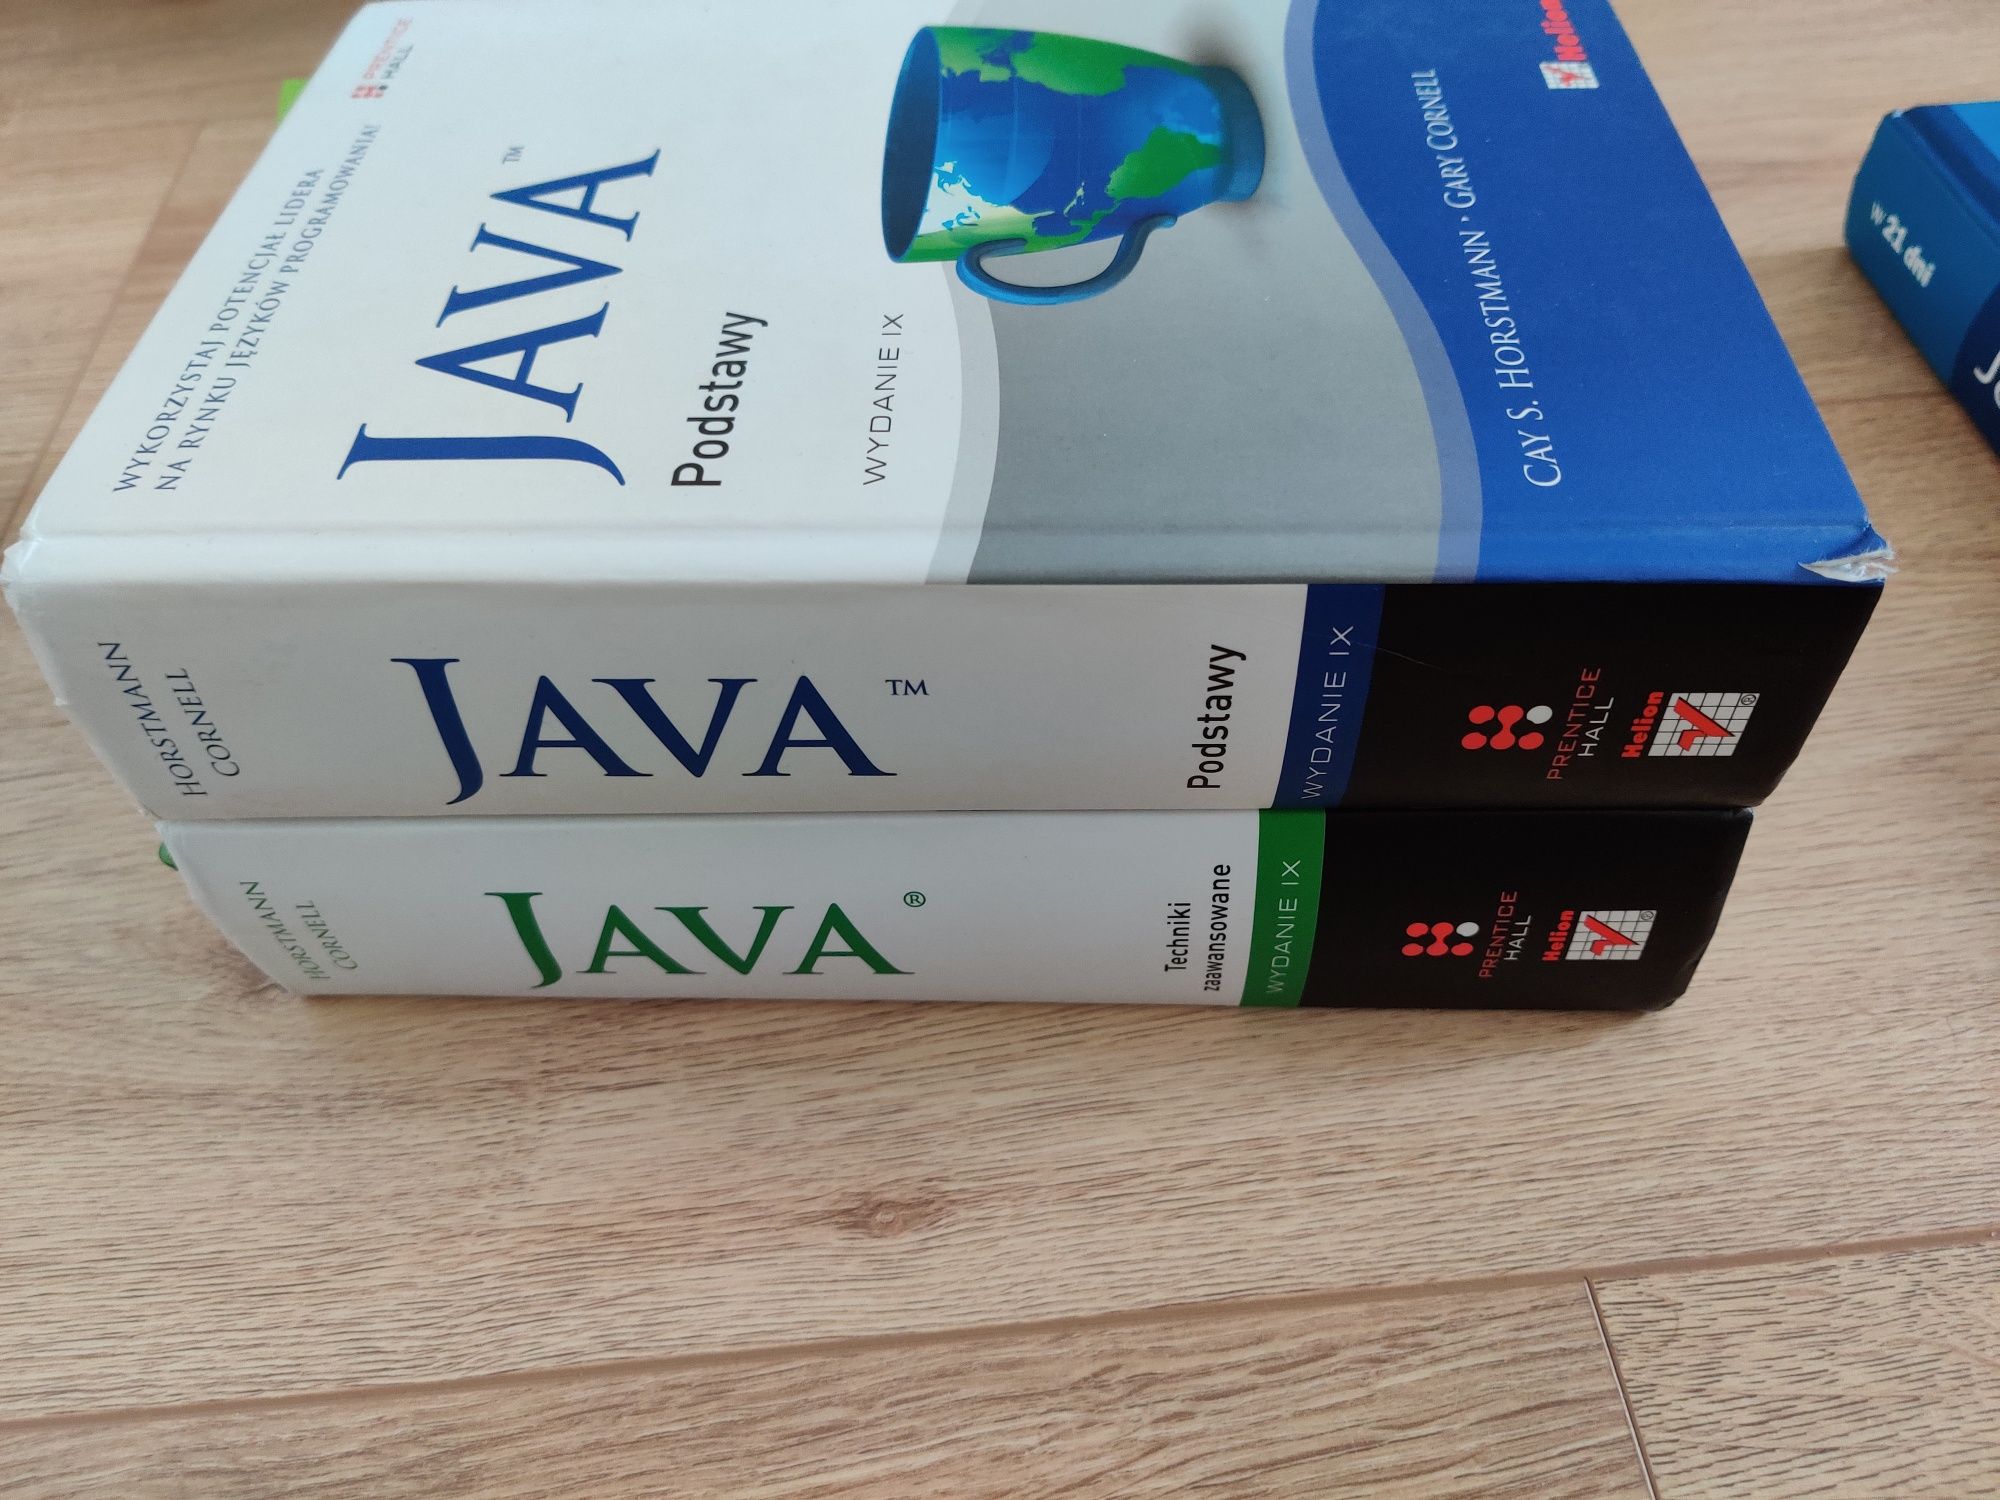 ZESTAW!  Java Podstawy, Java techniki zaawansowane